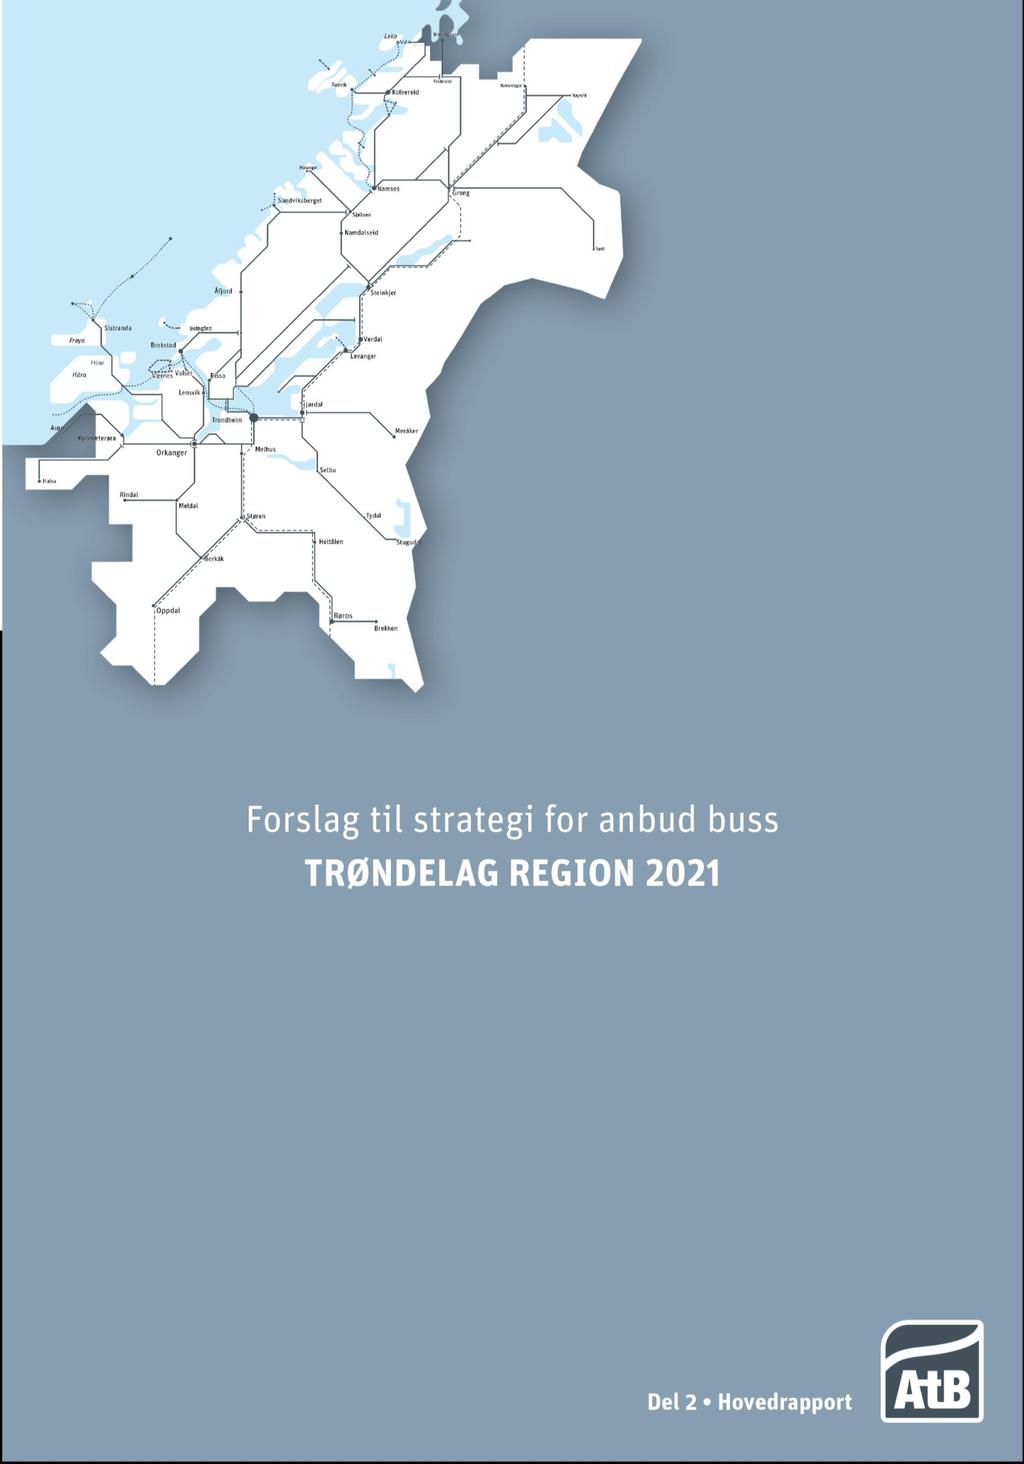 Del 2: Forslag til strategi for Anbud buss Trøndelag region 2021 (Regionanbud 2021) Hovedrapport